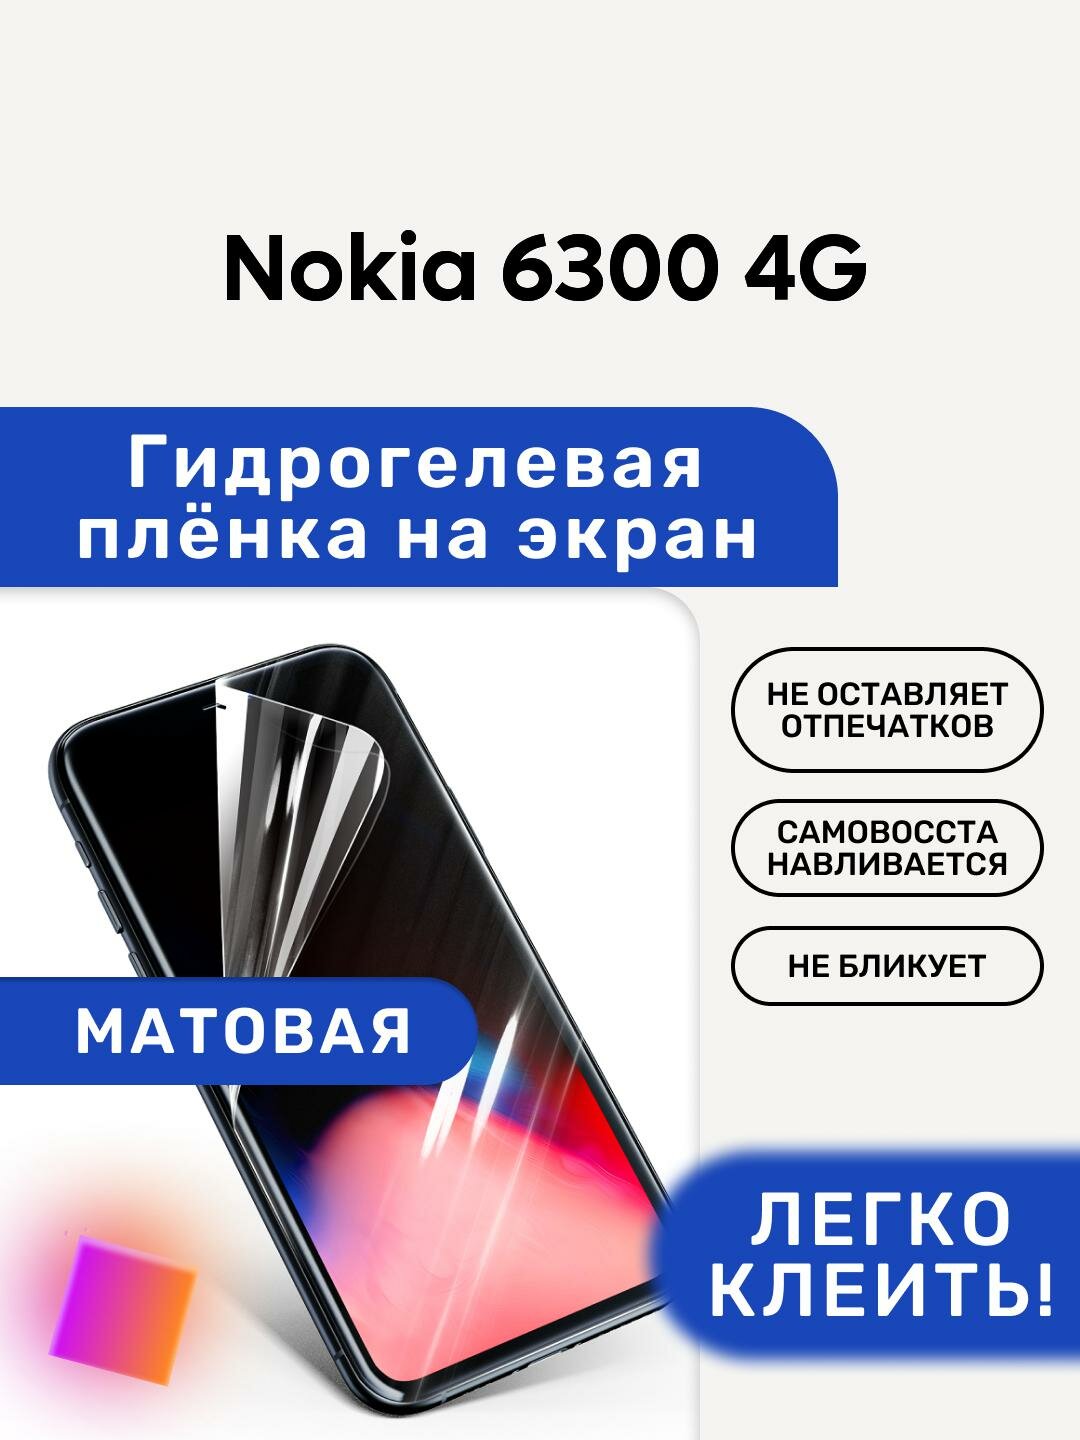 Матовая Гидрогелевая плёнка полиуретановая защита экрана Nokia 6300 4G